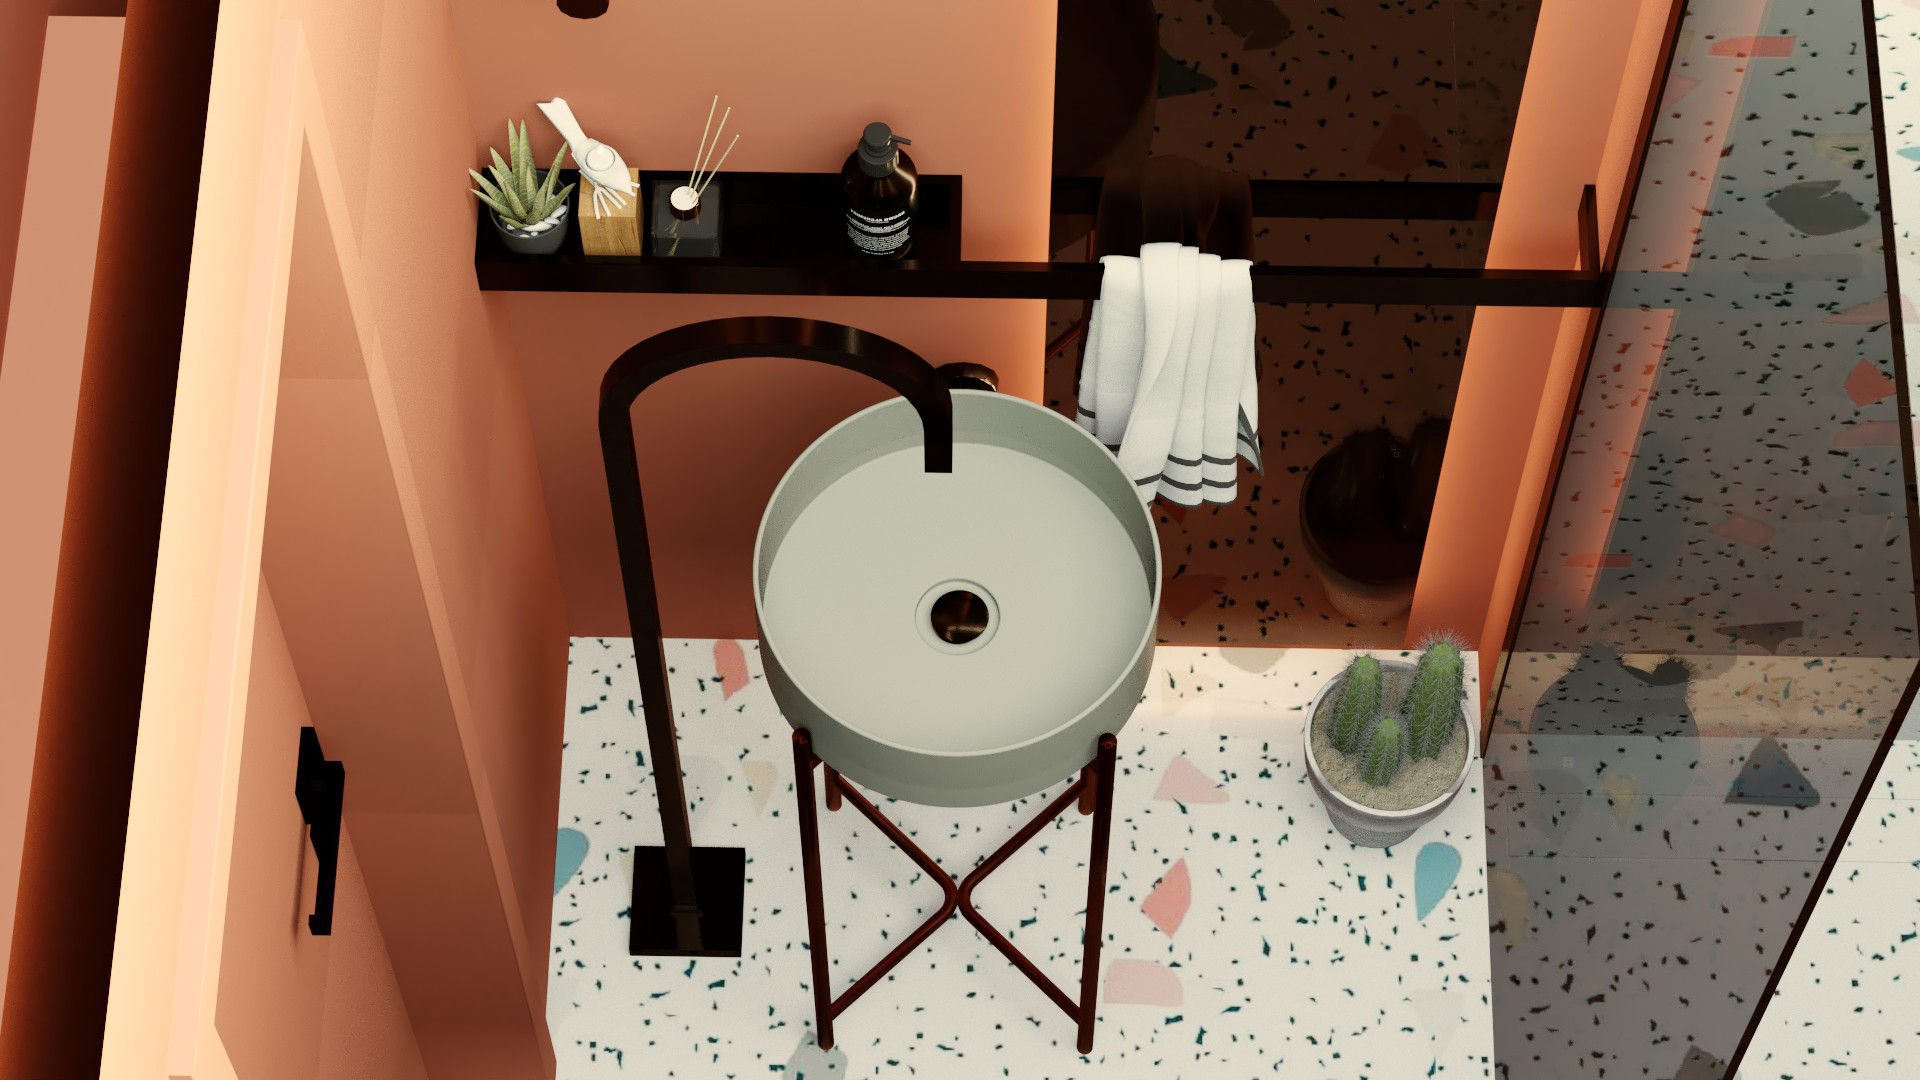 Casa de banho minimalista, Letícia Gurgel design de interiores Letícia Gurgel design de interiores Casas de banho minimalistas